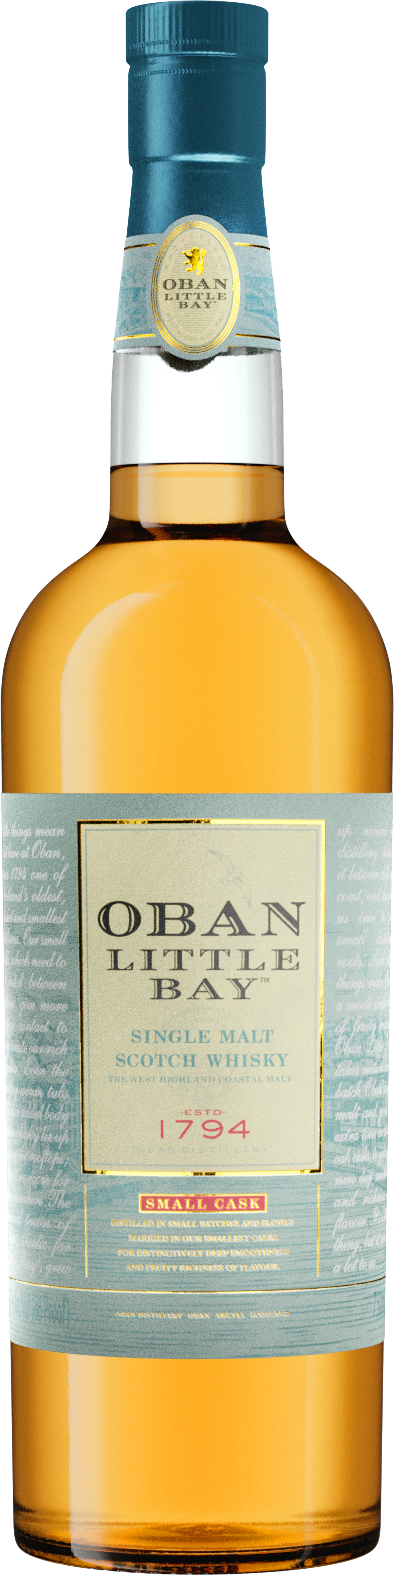 Buy Oban Little Bay Scotch Whisky Online -Craft City